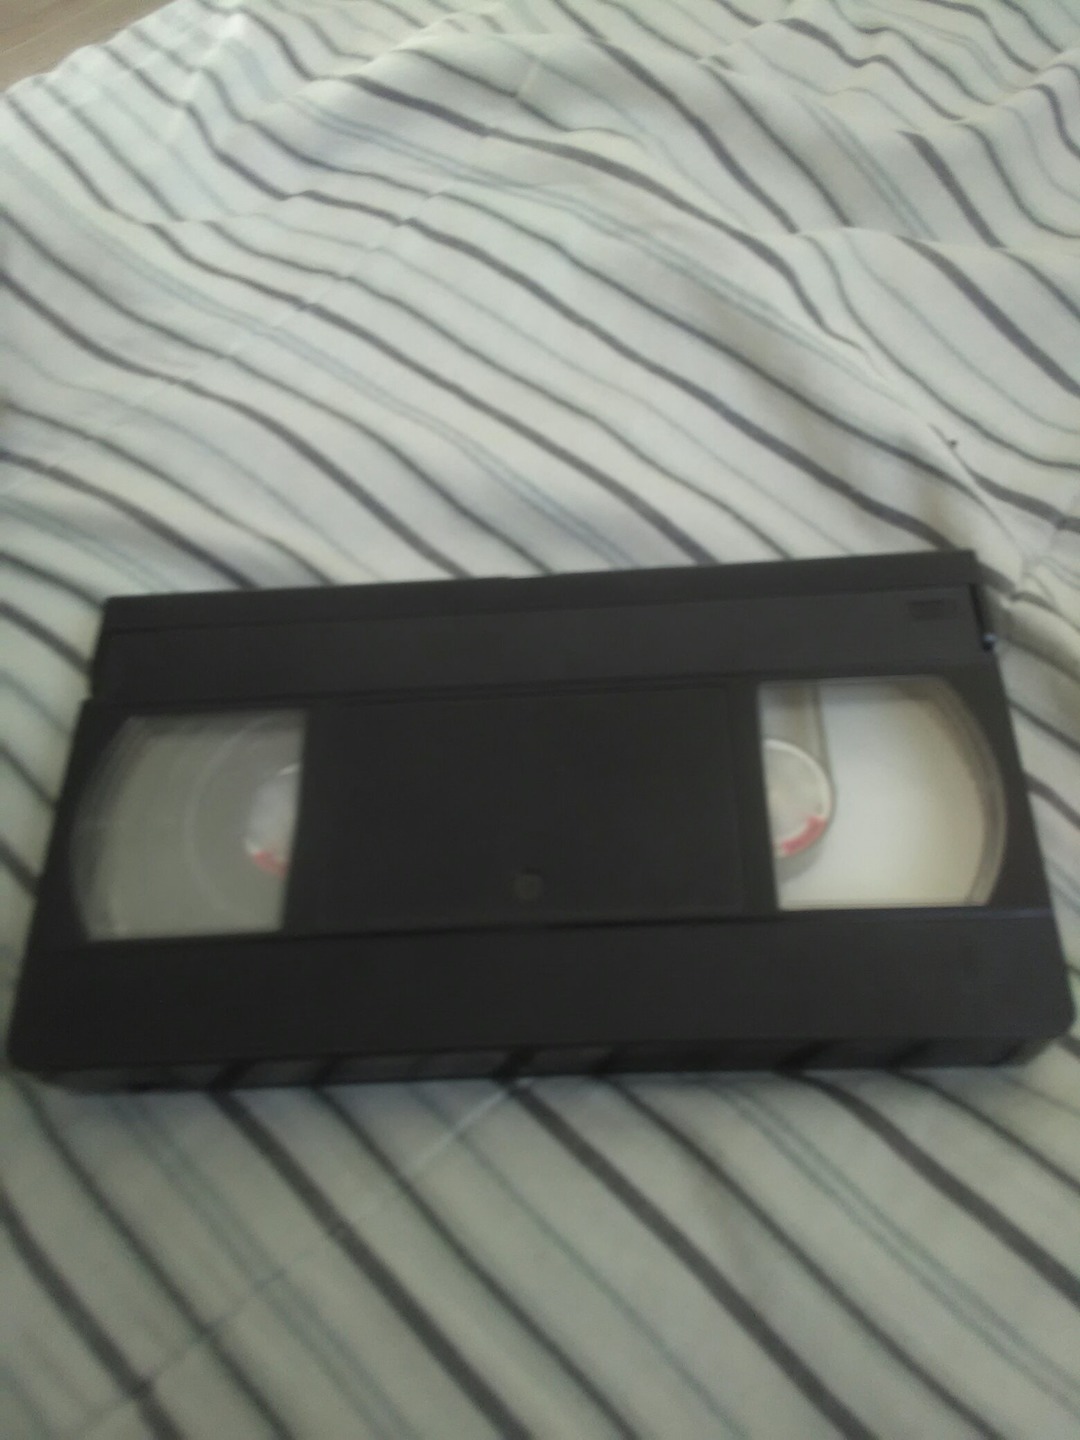 Gente, encontre este cassette de VHS, digan que creen que tiene - meme